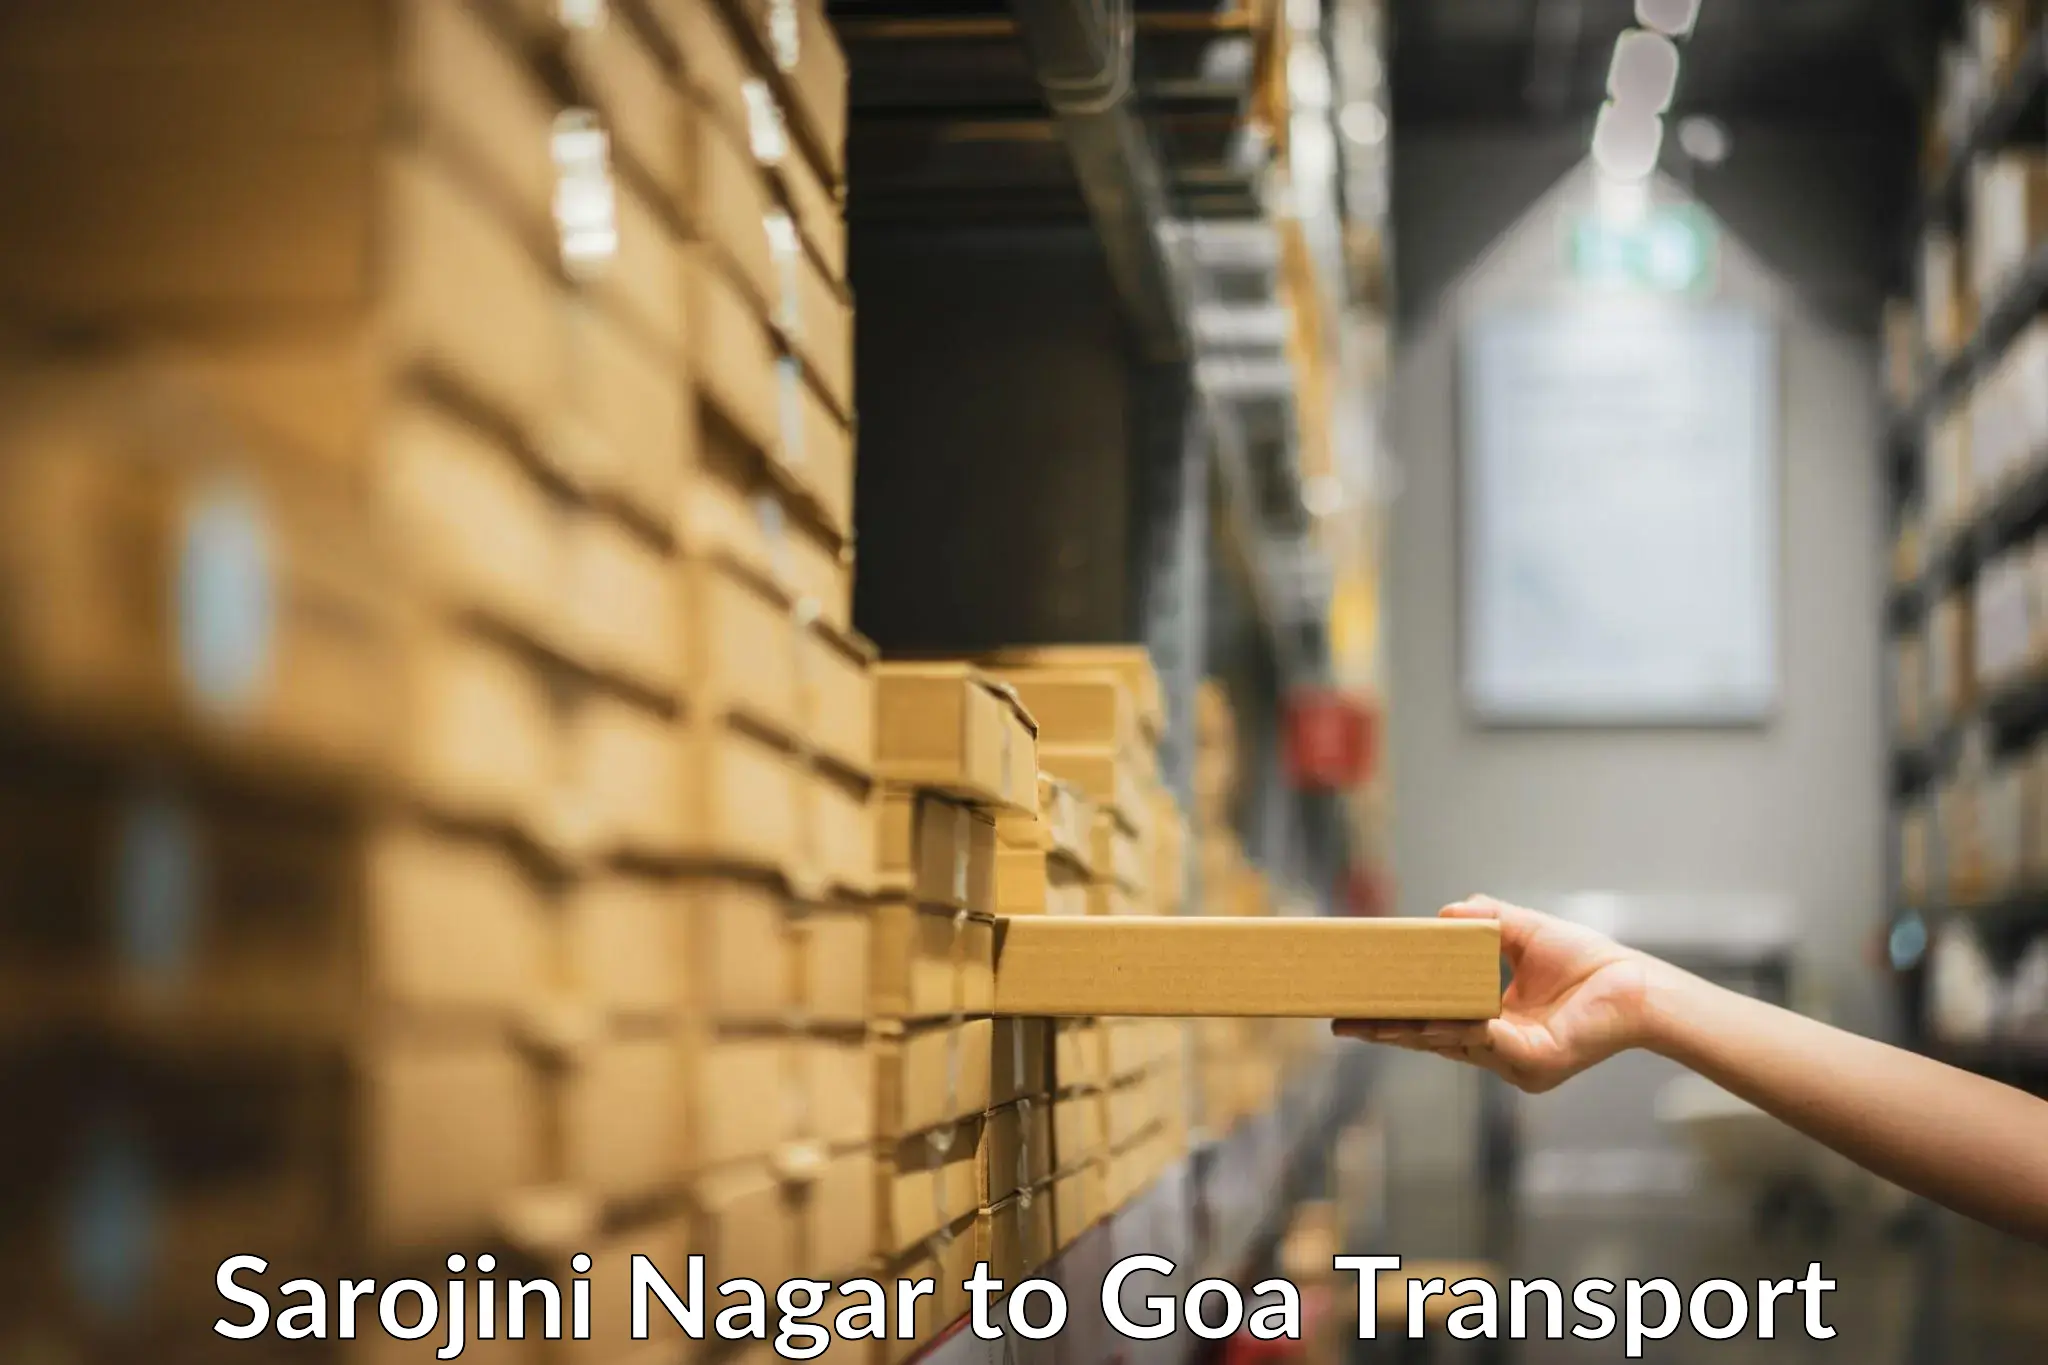 Express transport services Sarojini Nagar to IIT Goa